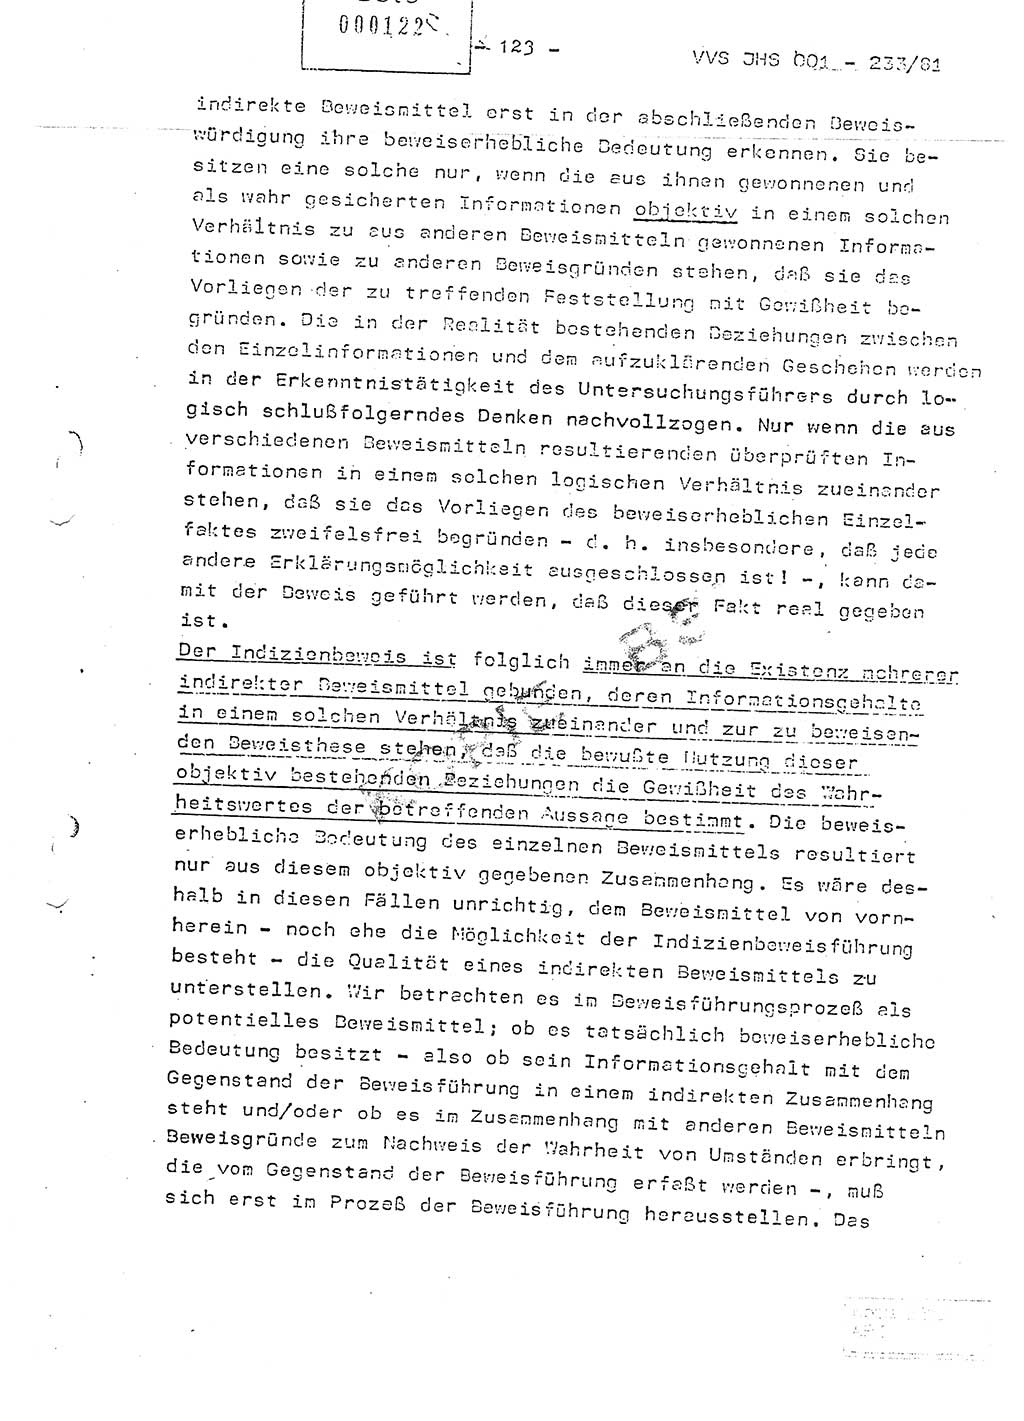 Dissertation Oberstleutnant Horst Zank (JHS), Oberstleutnant Dr. Karl-Heinz Knoblauch (JHS), Oberstleutnant Gustav-Adolf Kowalewski (HA Ⅸ), Oberstleutnant Wolfgang Plötner (HA Ⅸ), Ministerium für Staatssicherheit (MfS) [Deutsche Demokratische Republik (DDR)], Juristische Hochschule (JHS), Vertrauliche Verschlußsache (VVS) o001-233/81, Potsdam 1981, Blatt 123 (Diss. MfS DDR JHS VVS o001-233/81 1981, Bl. 123)